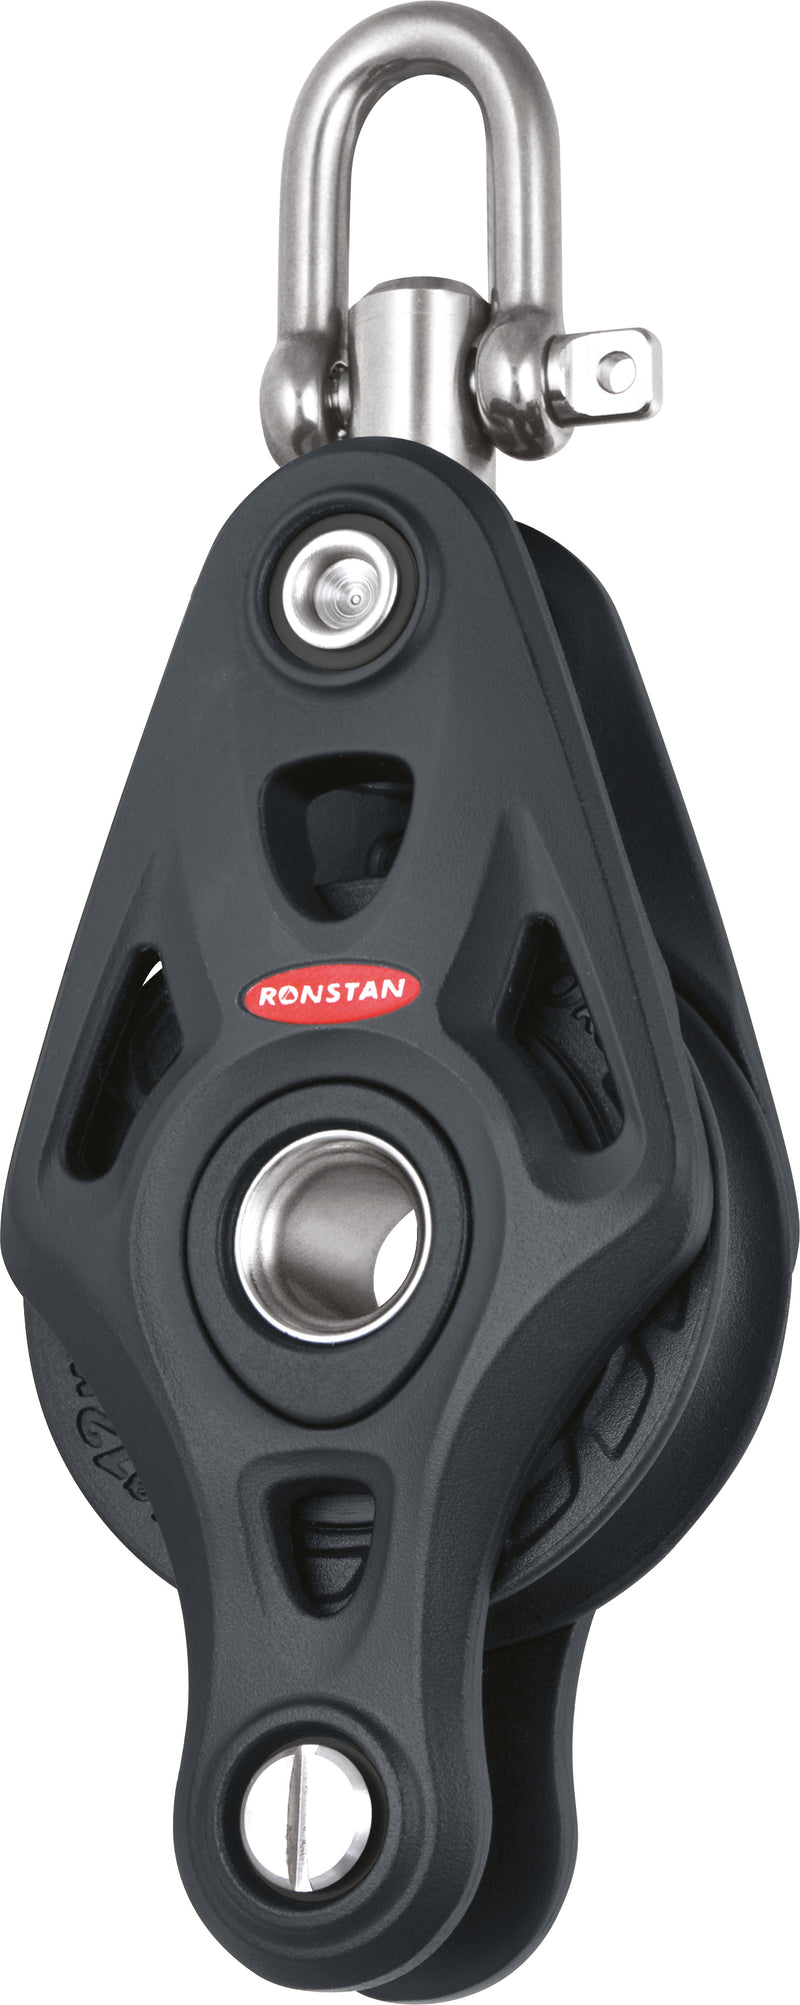 Ronstan Series 60 Core enkel/hv, RF64110